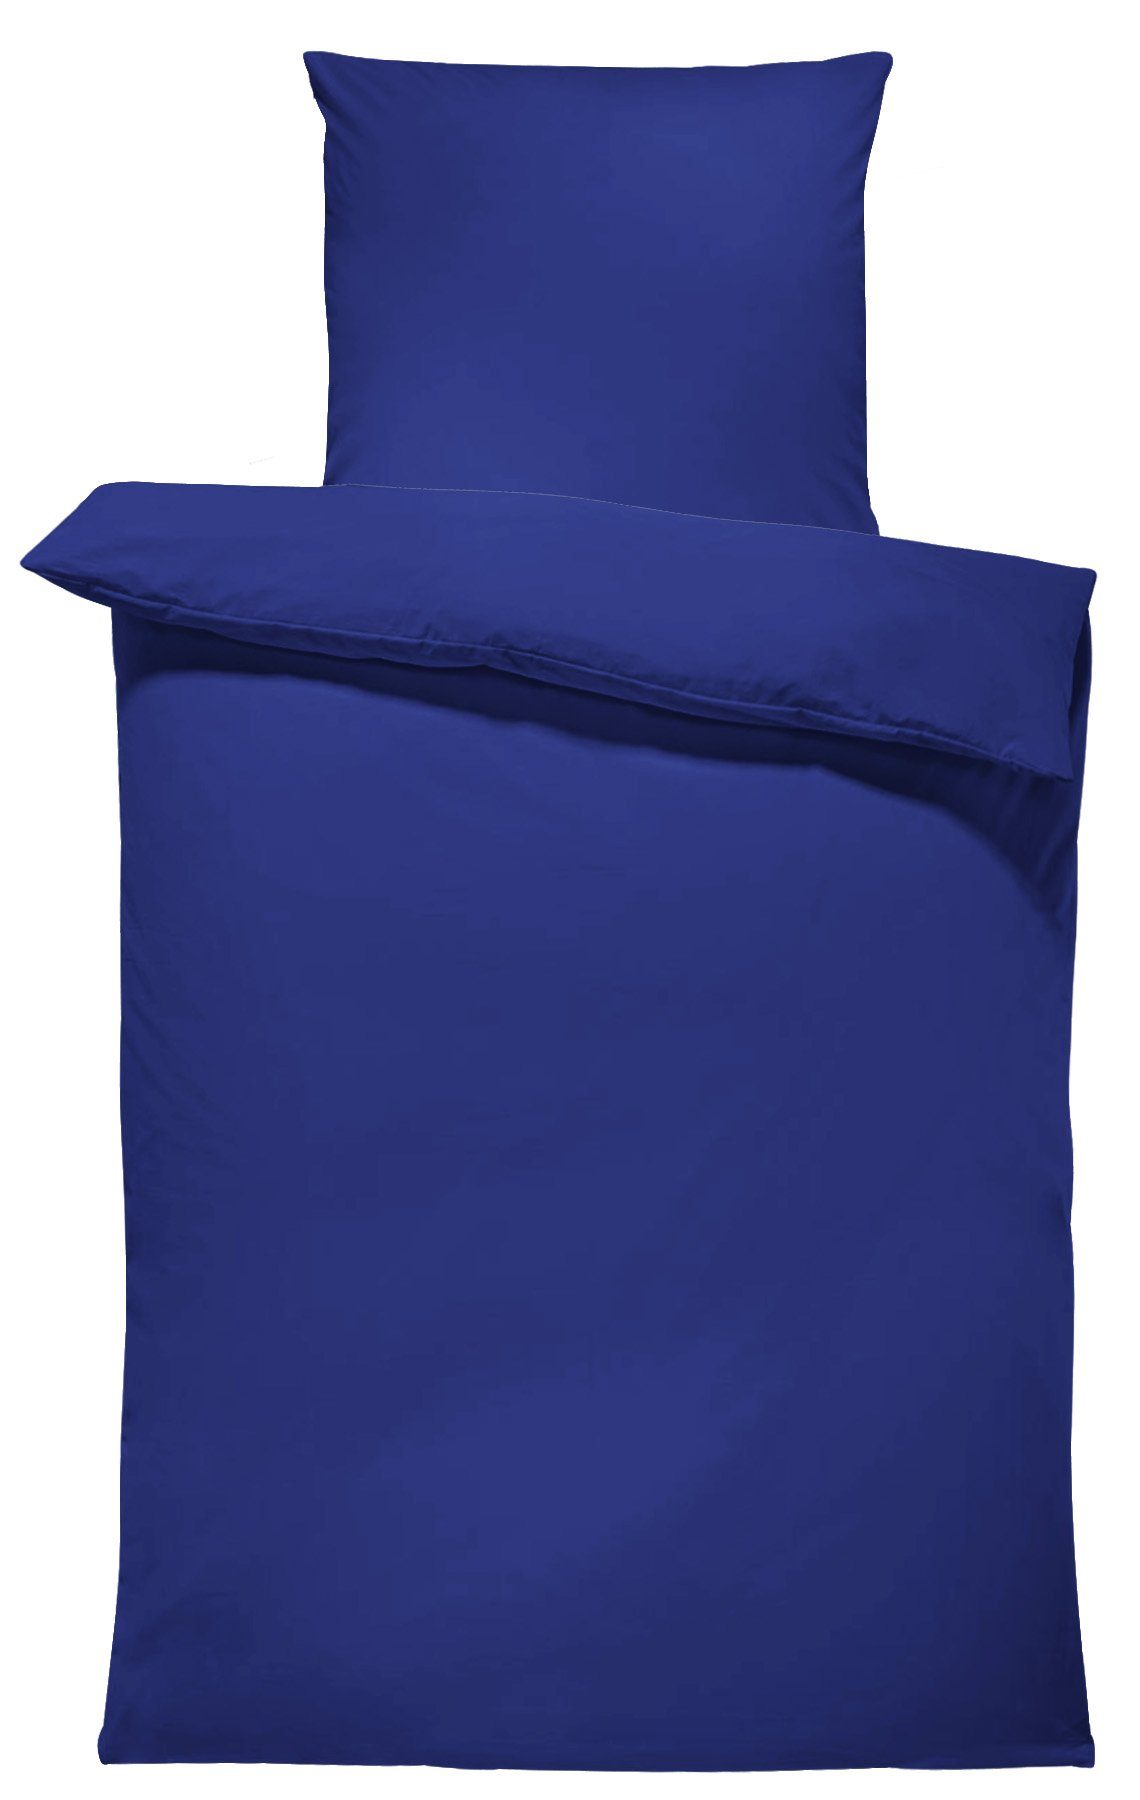 One Renforcé, Home, mit Bettwäsche Unifarben Baumwolle 2 dunkelblau Einfarbig, Reißverschluss, Normalgröße teilig,